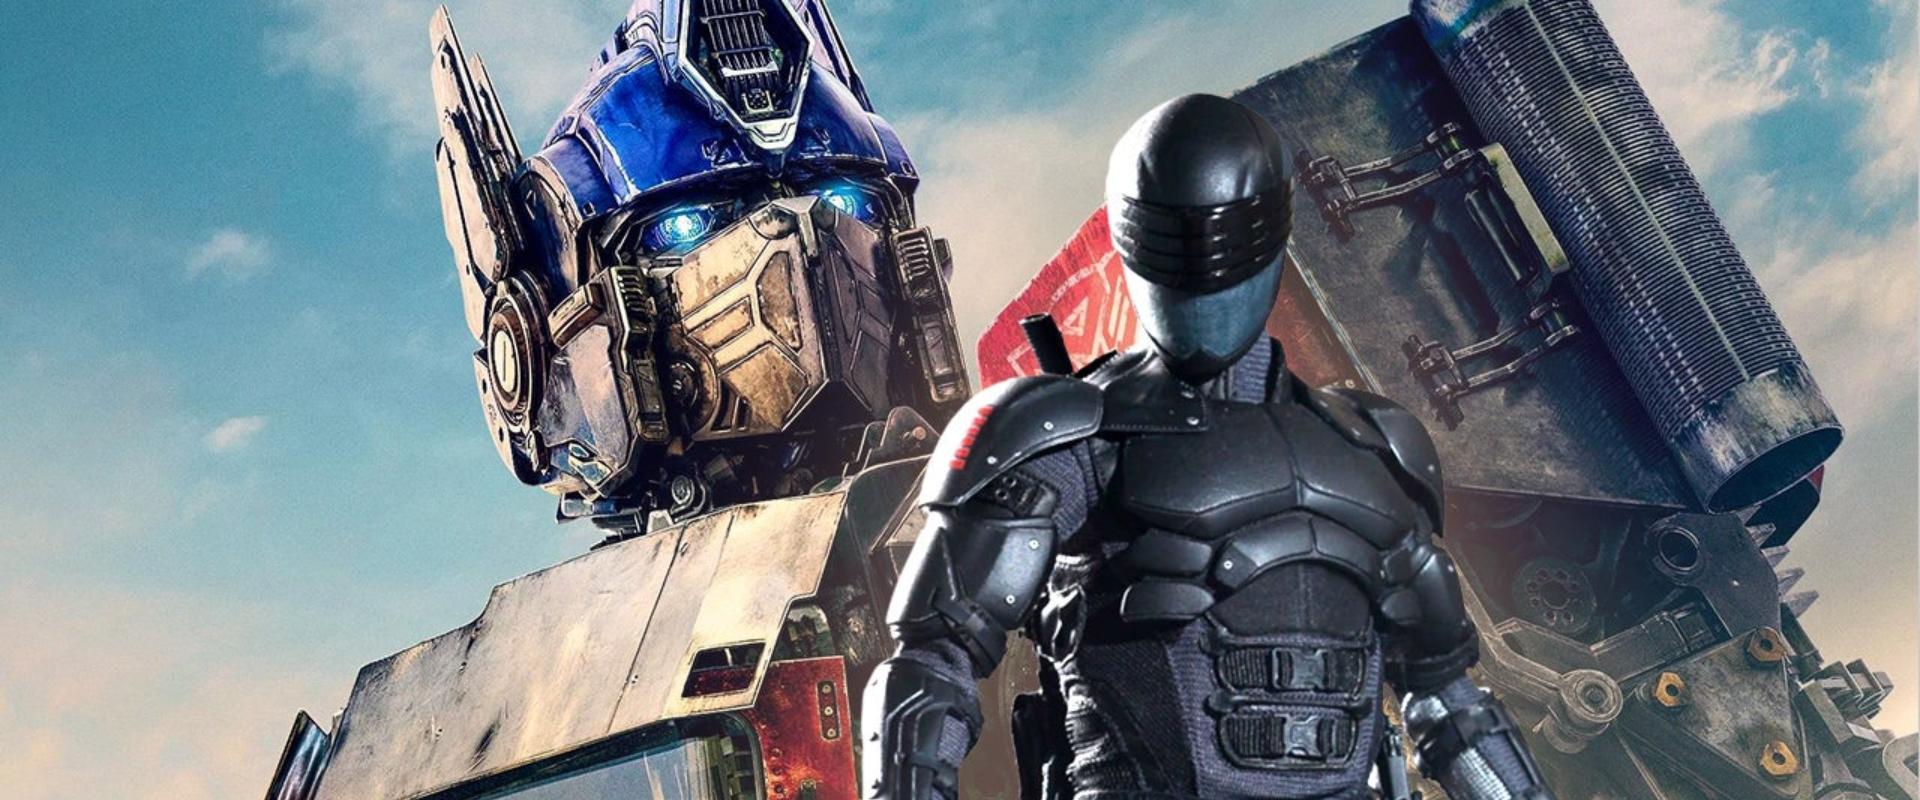 Ami nélkül nem lehet élni: jön a Transformers & G.I. Joe crossover film